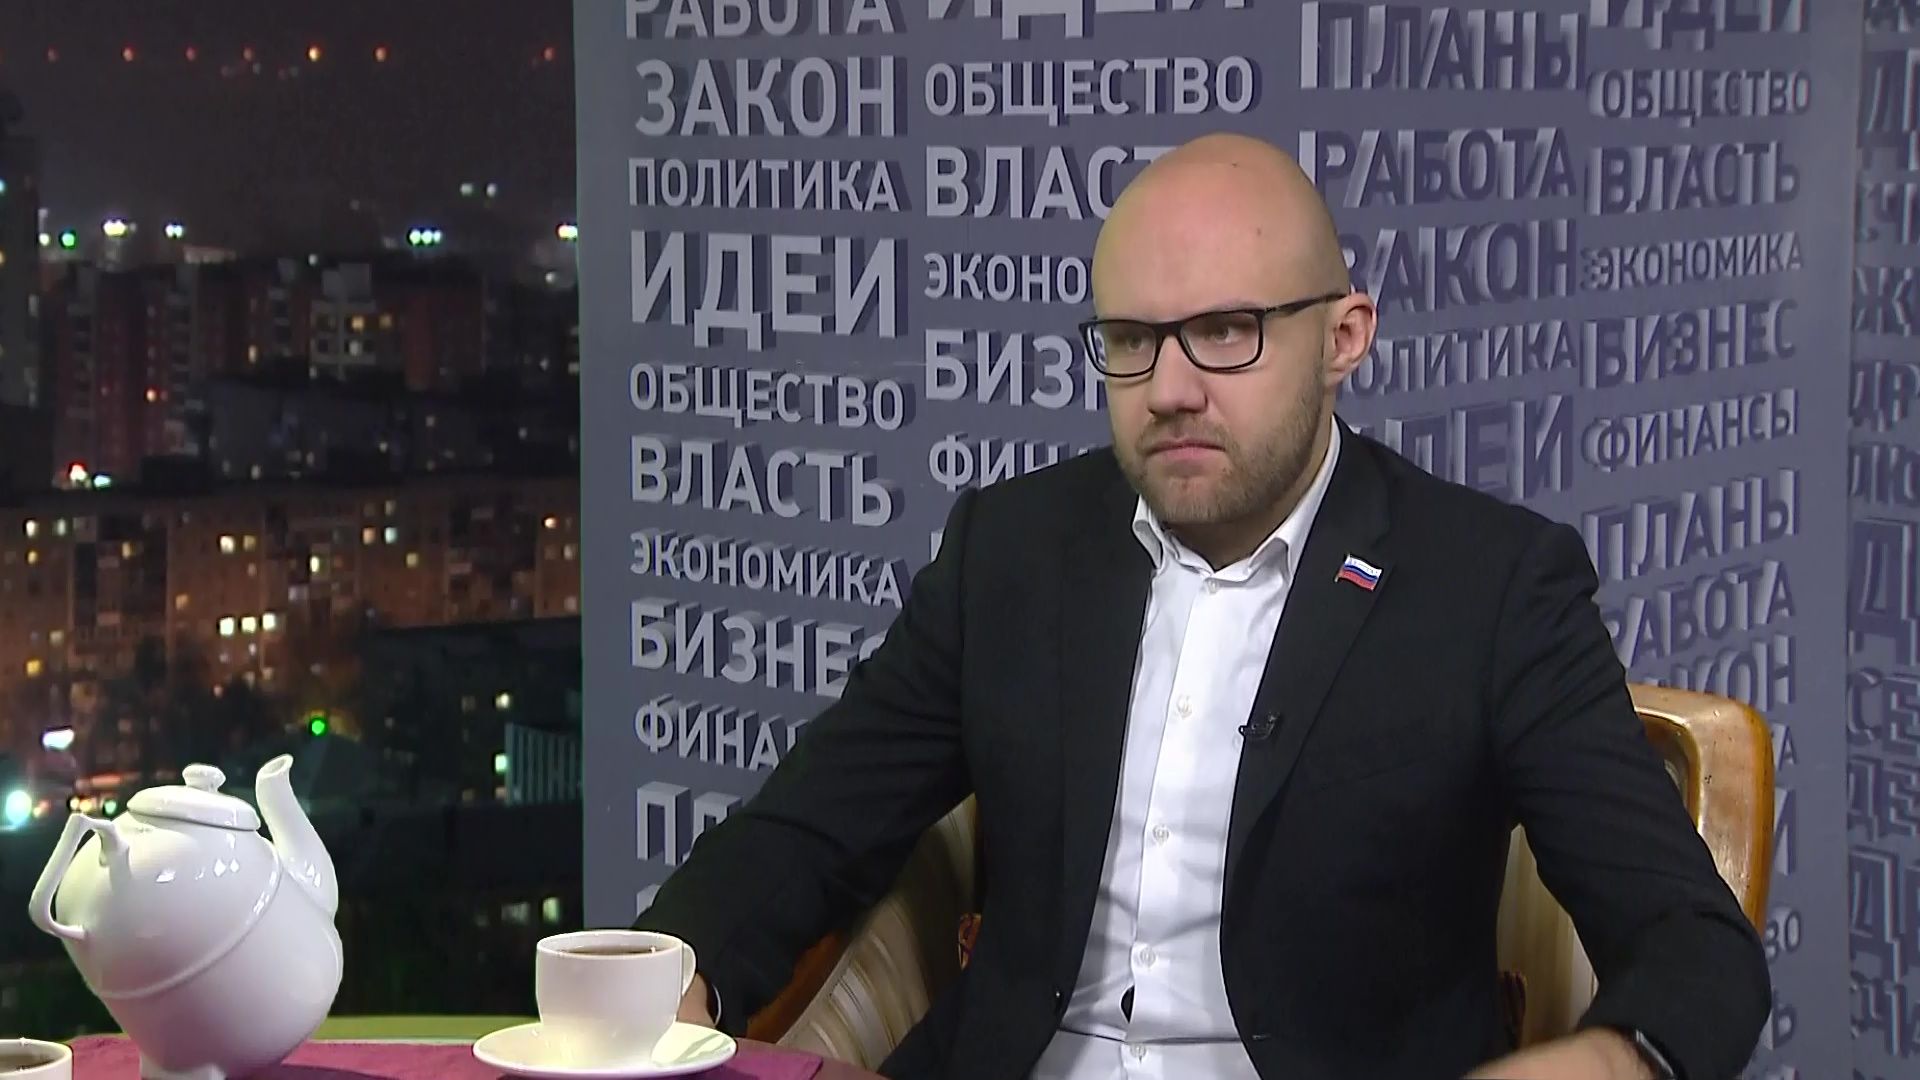 Илья Лисняк, депутат Законодательного Собрания Пермского края